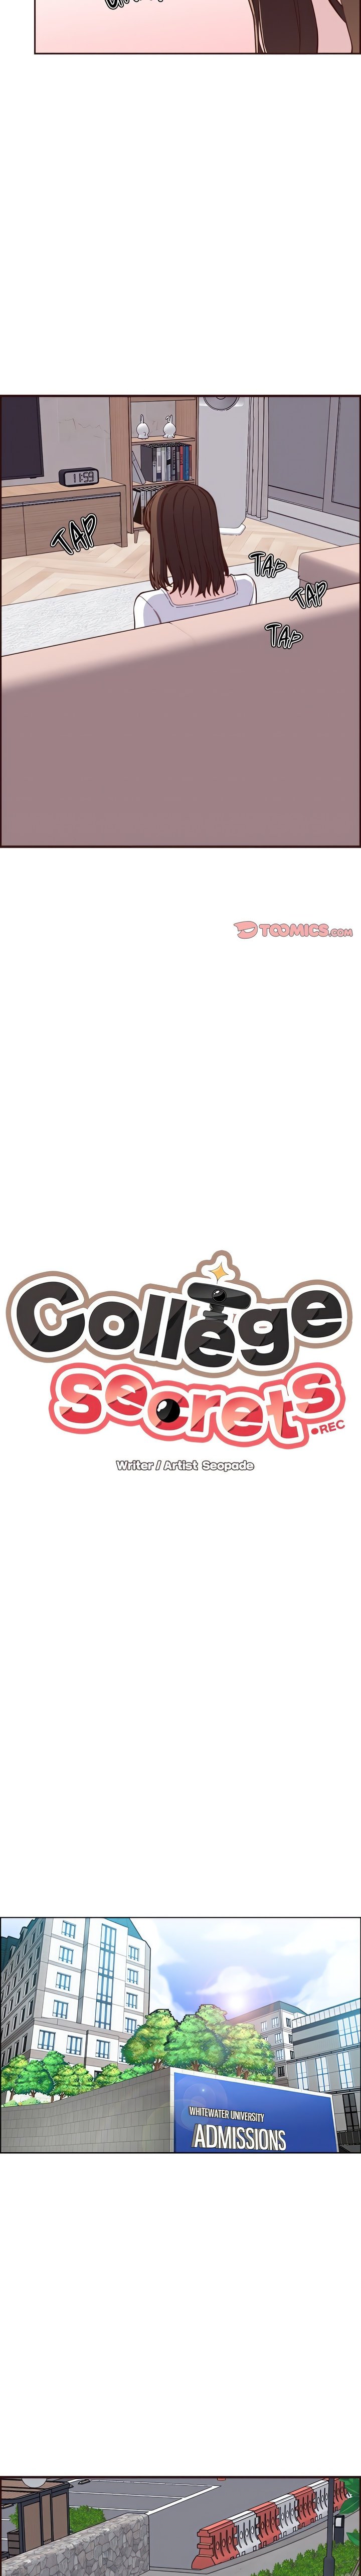 college-secrets-chap-17-1